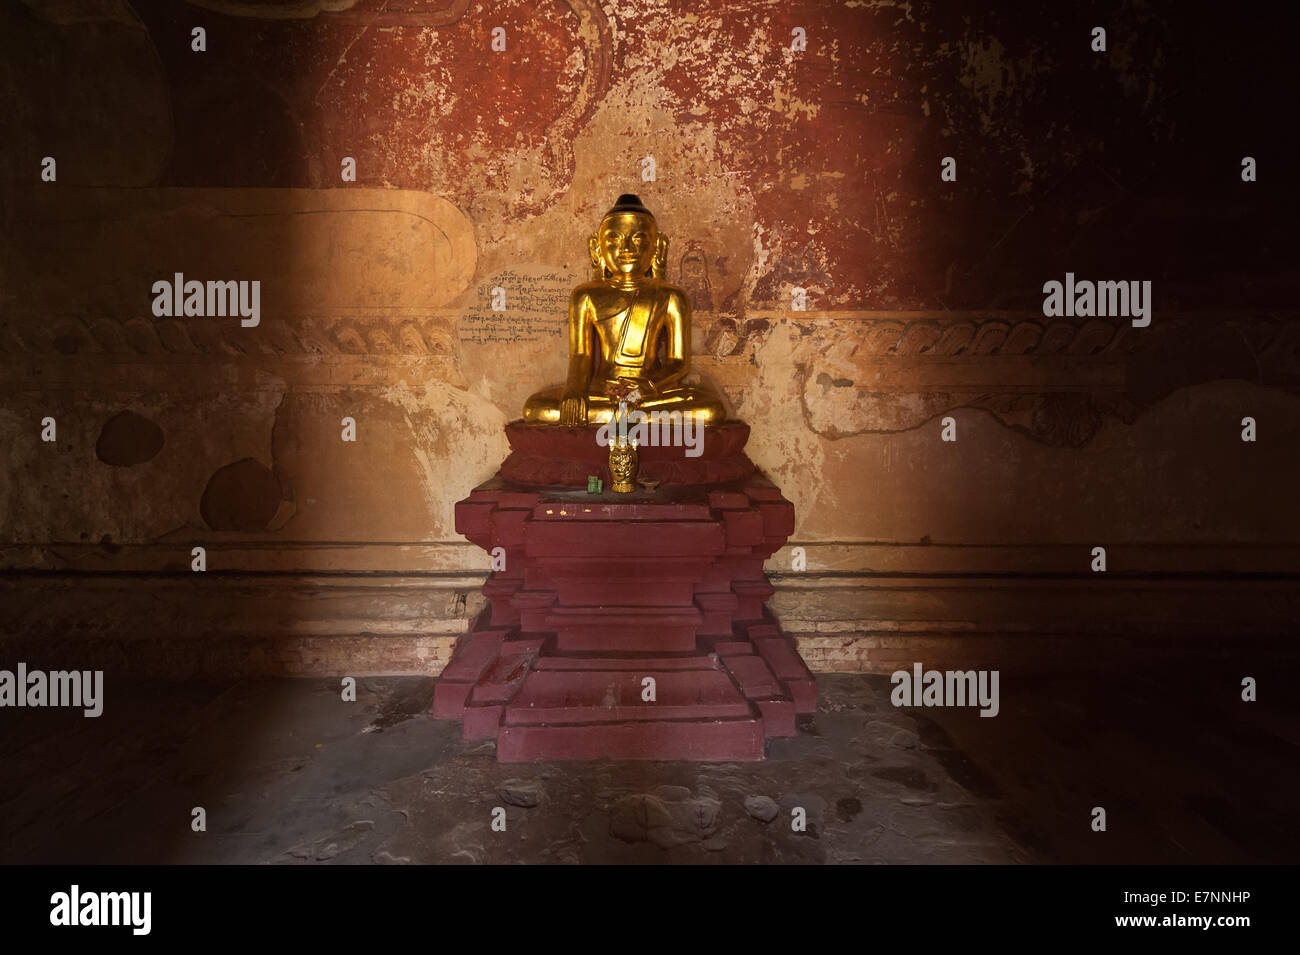 L'architecture ancienne de vieux temples bouddhistes à Bagan Royaume, Myanmar (Birmanie). Statue du Bouddha d'or à l'intérieur de l'une des ruines de la pagode Banque D'Images